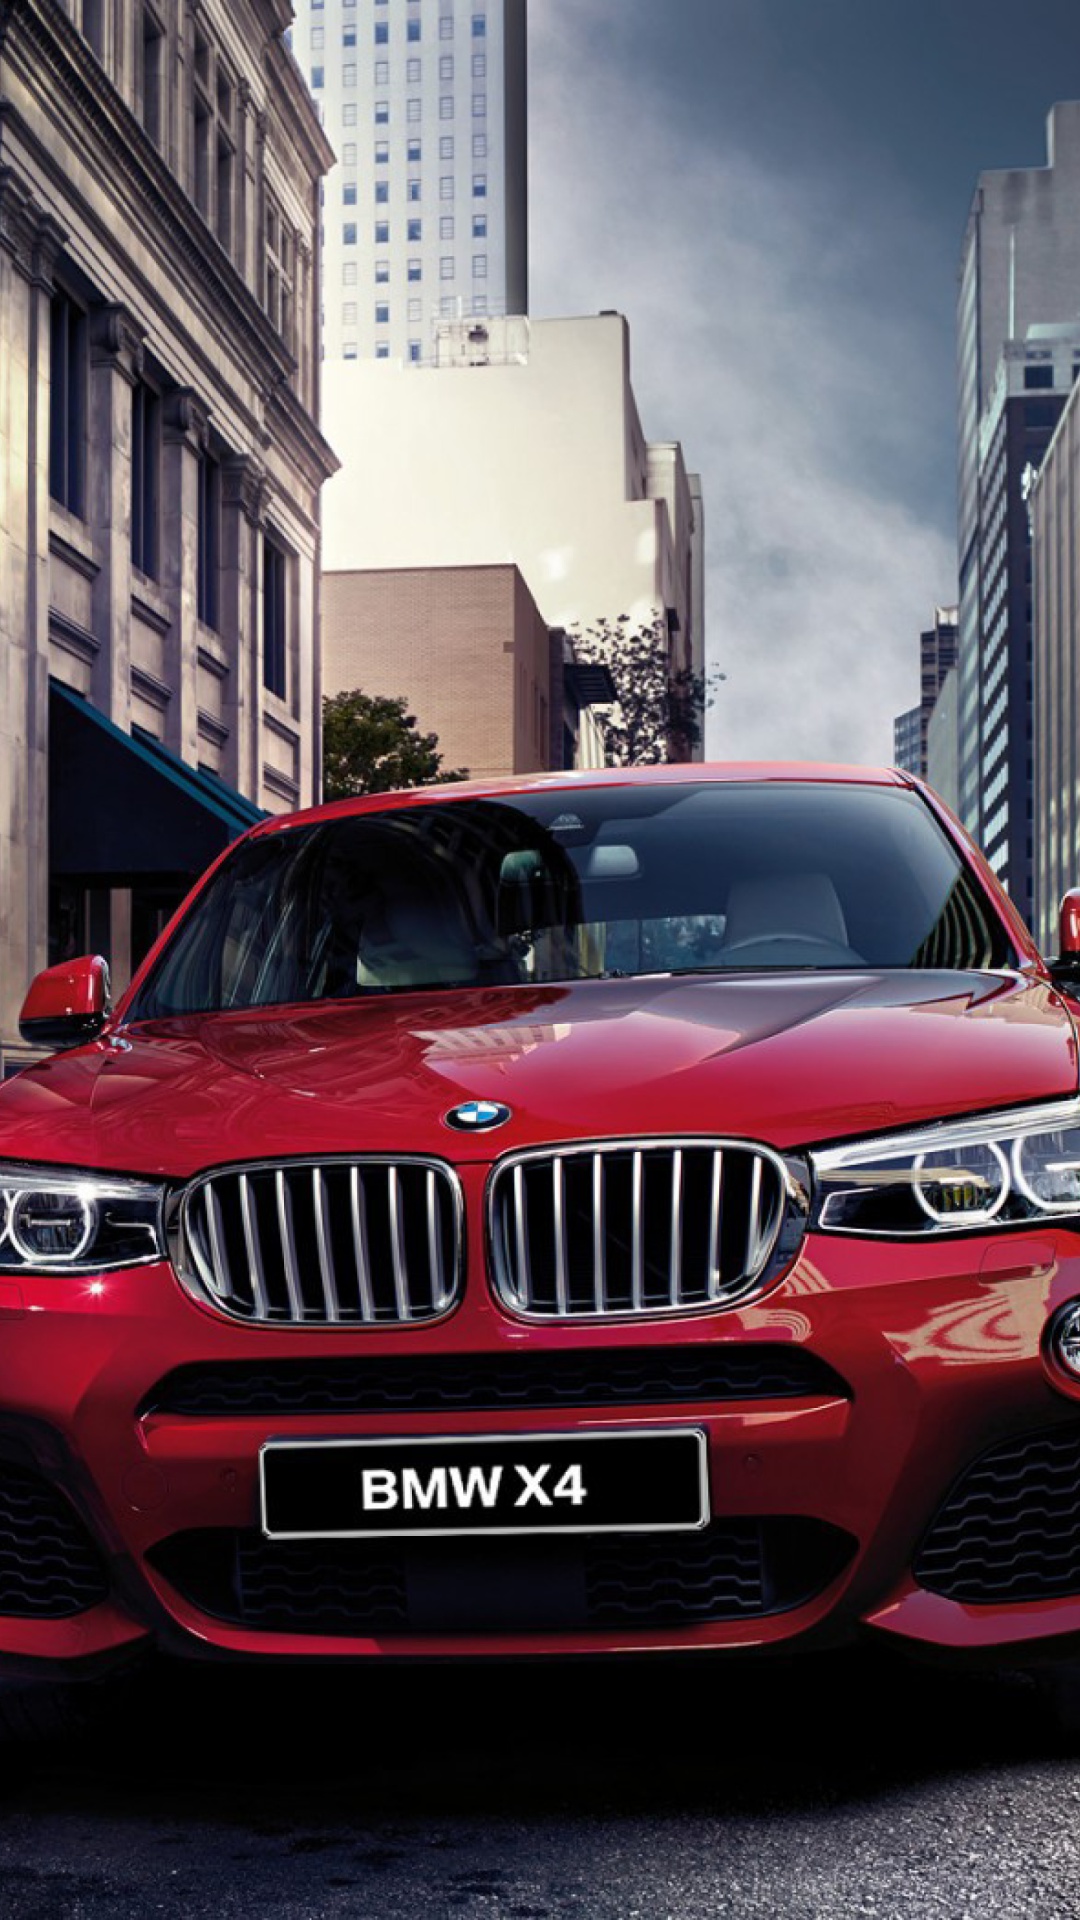 BMW X4 2015 screenshot #1 1080x1920